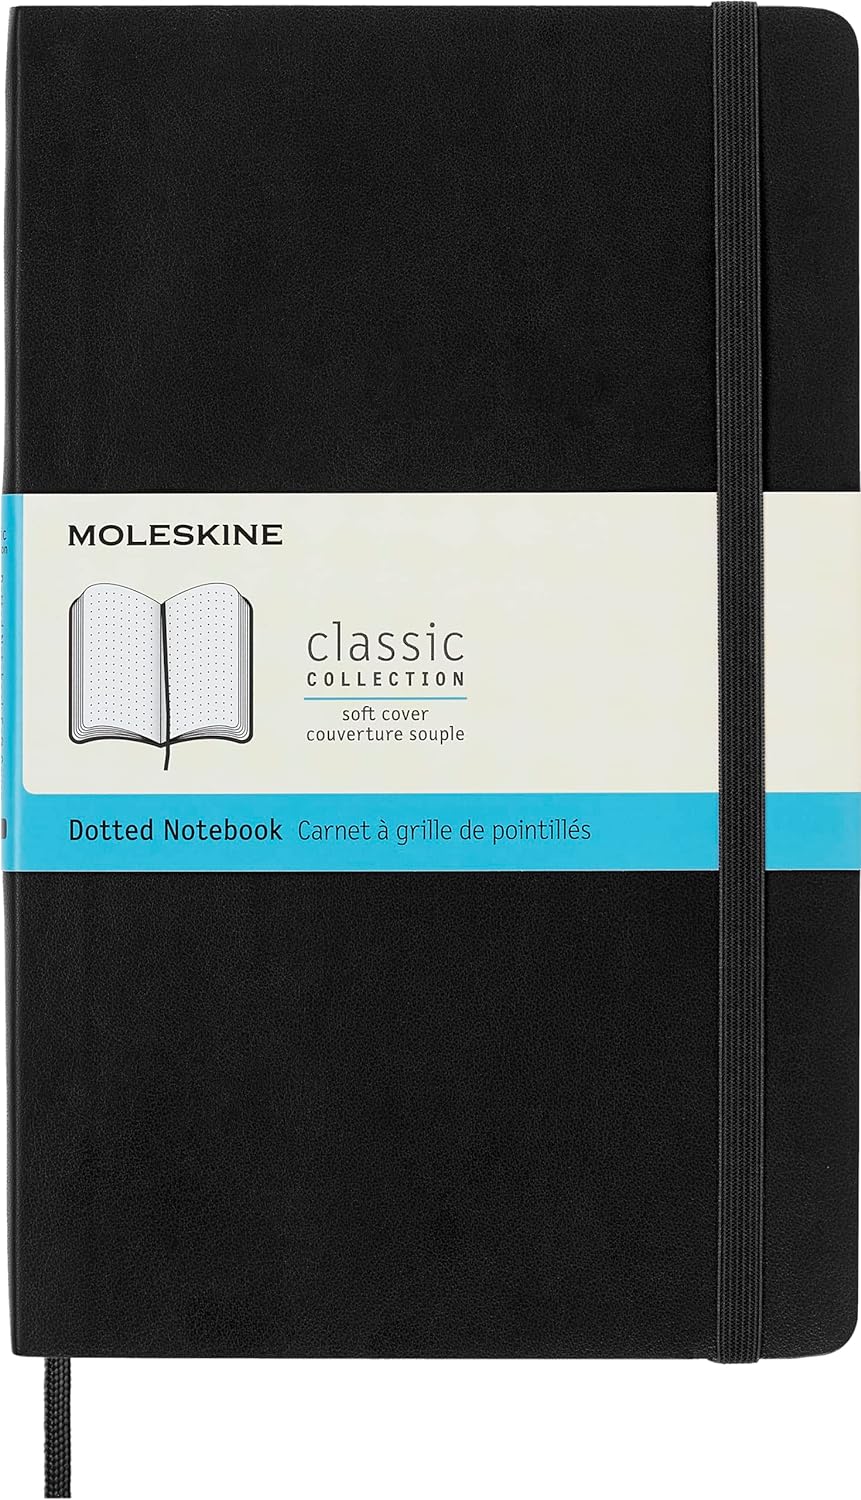 MOLESKINE - Classic Notebook - Soft Cover (Portada Suave)